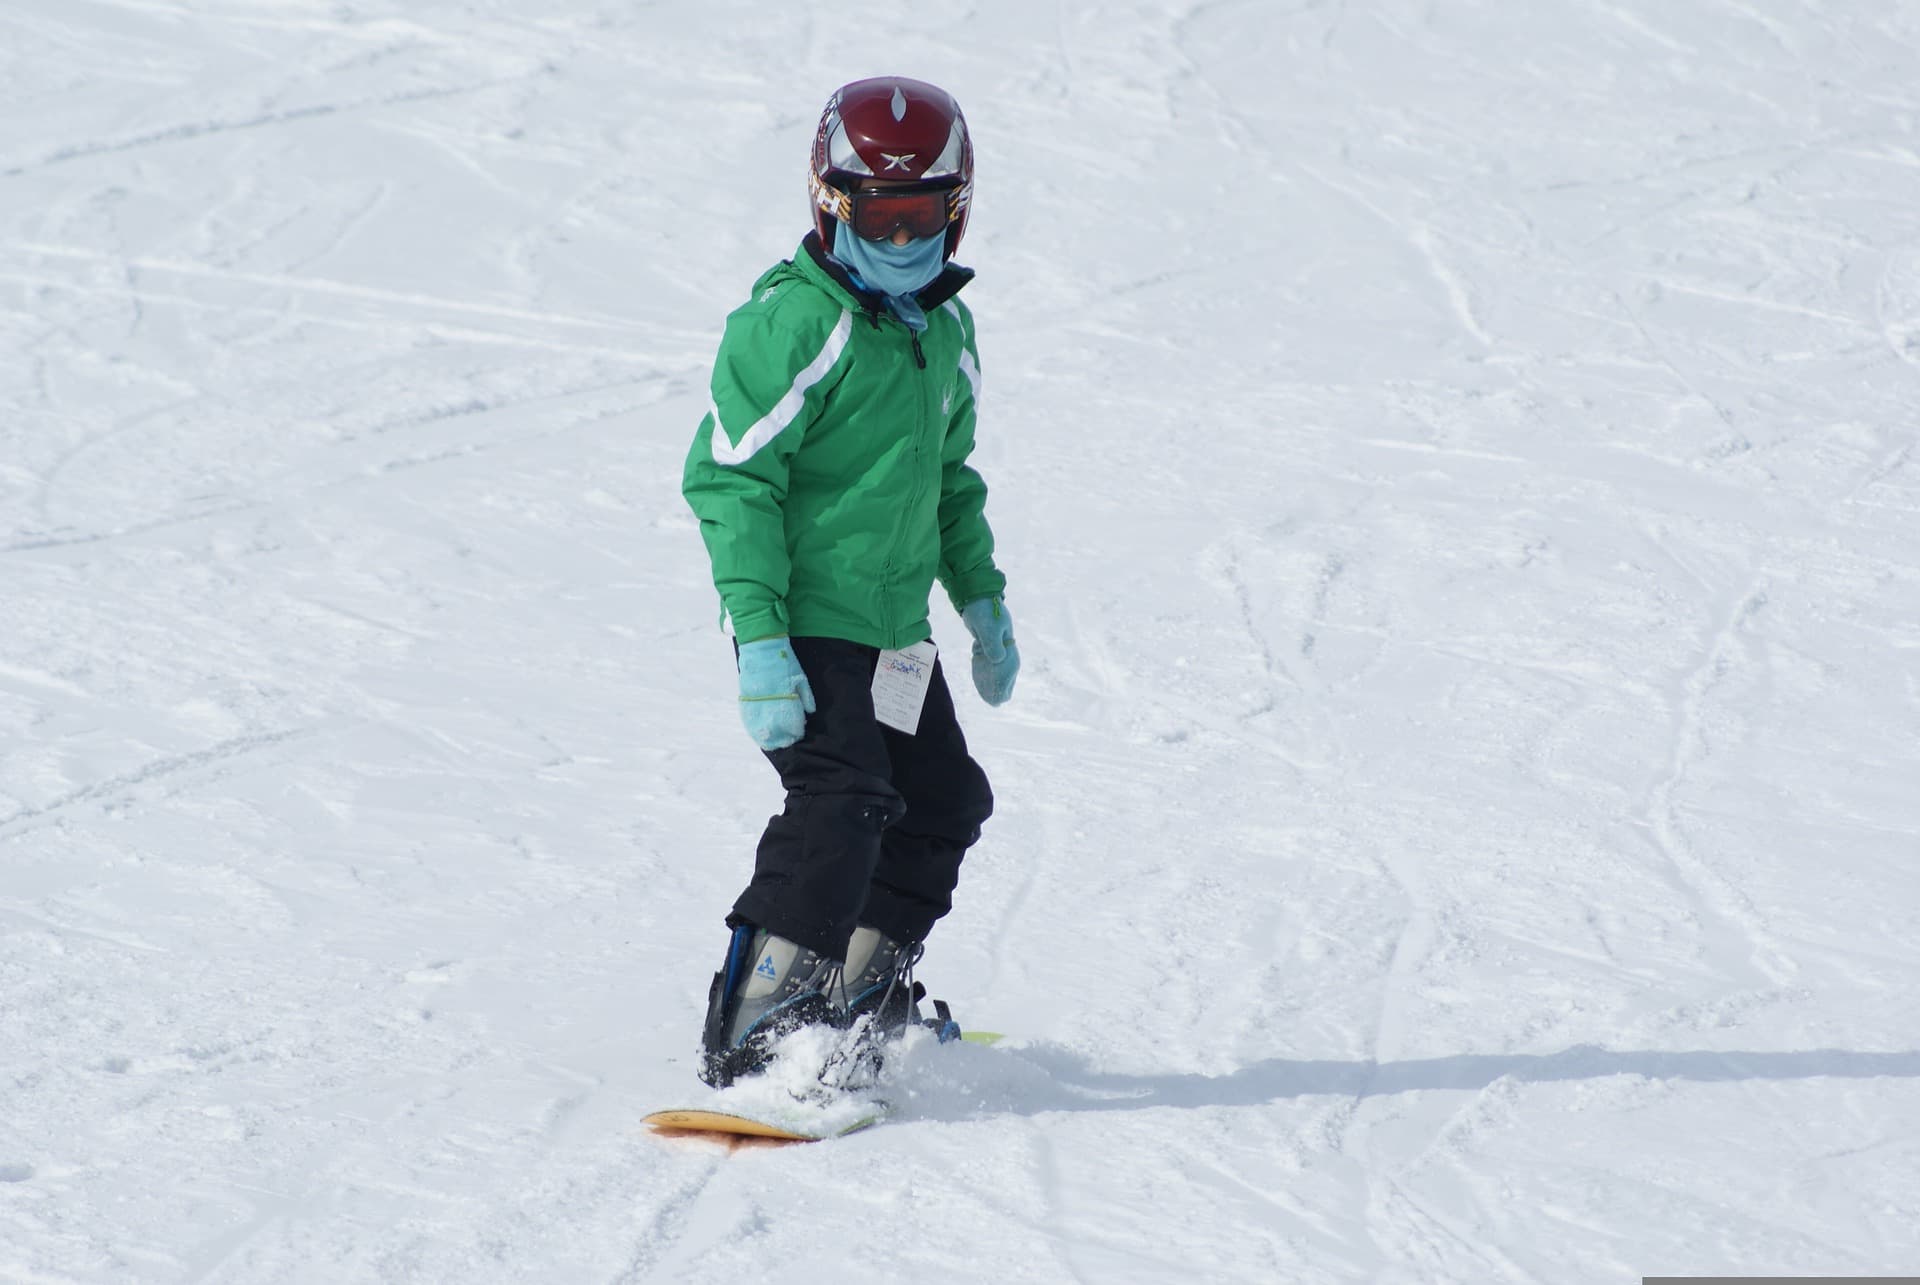 Comment faire débuter le snowboard à son enfant ? - Les voyages de Tao